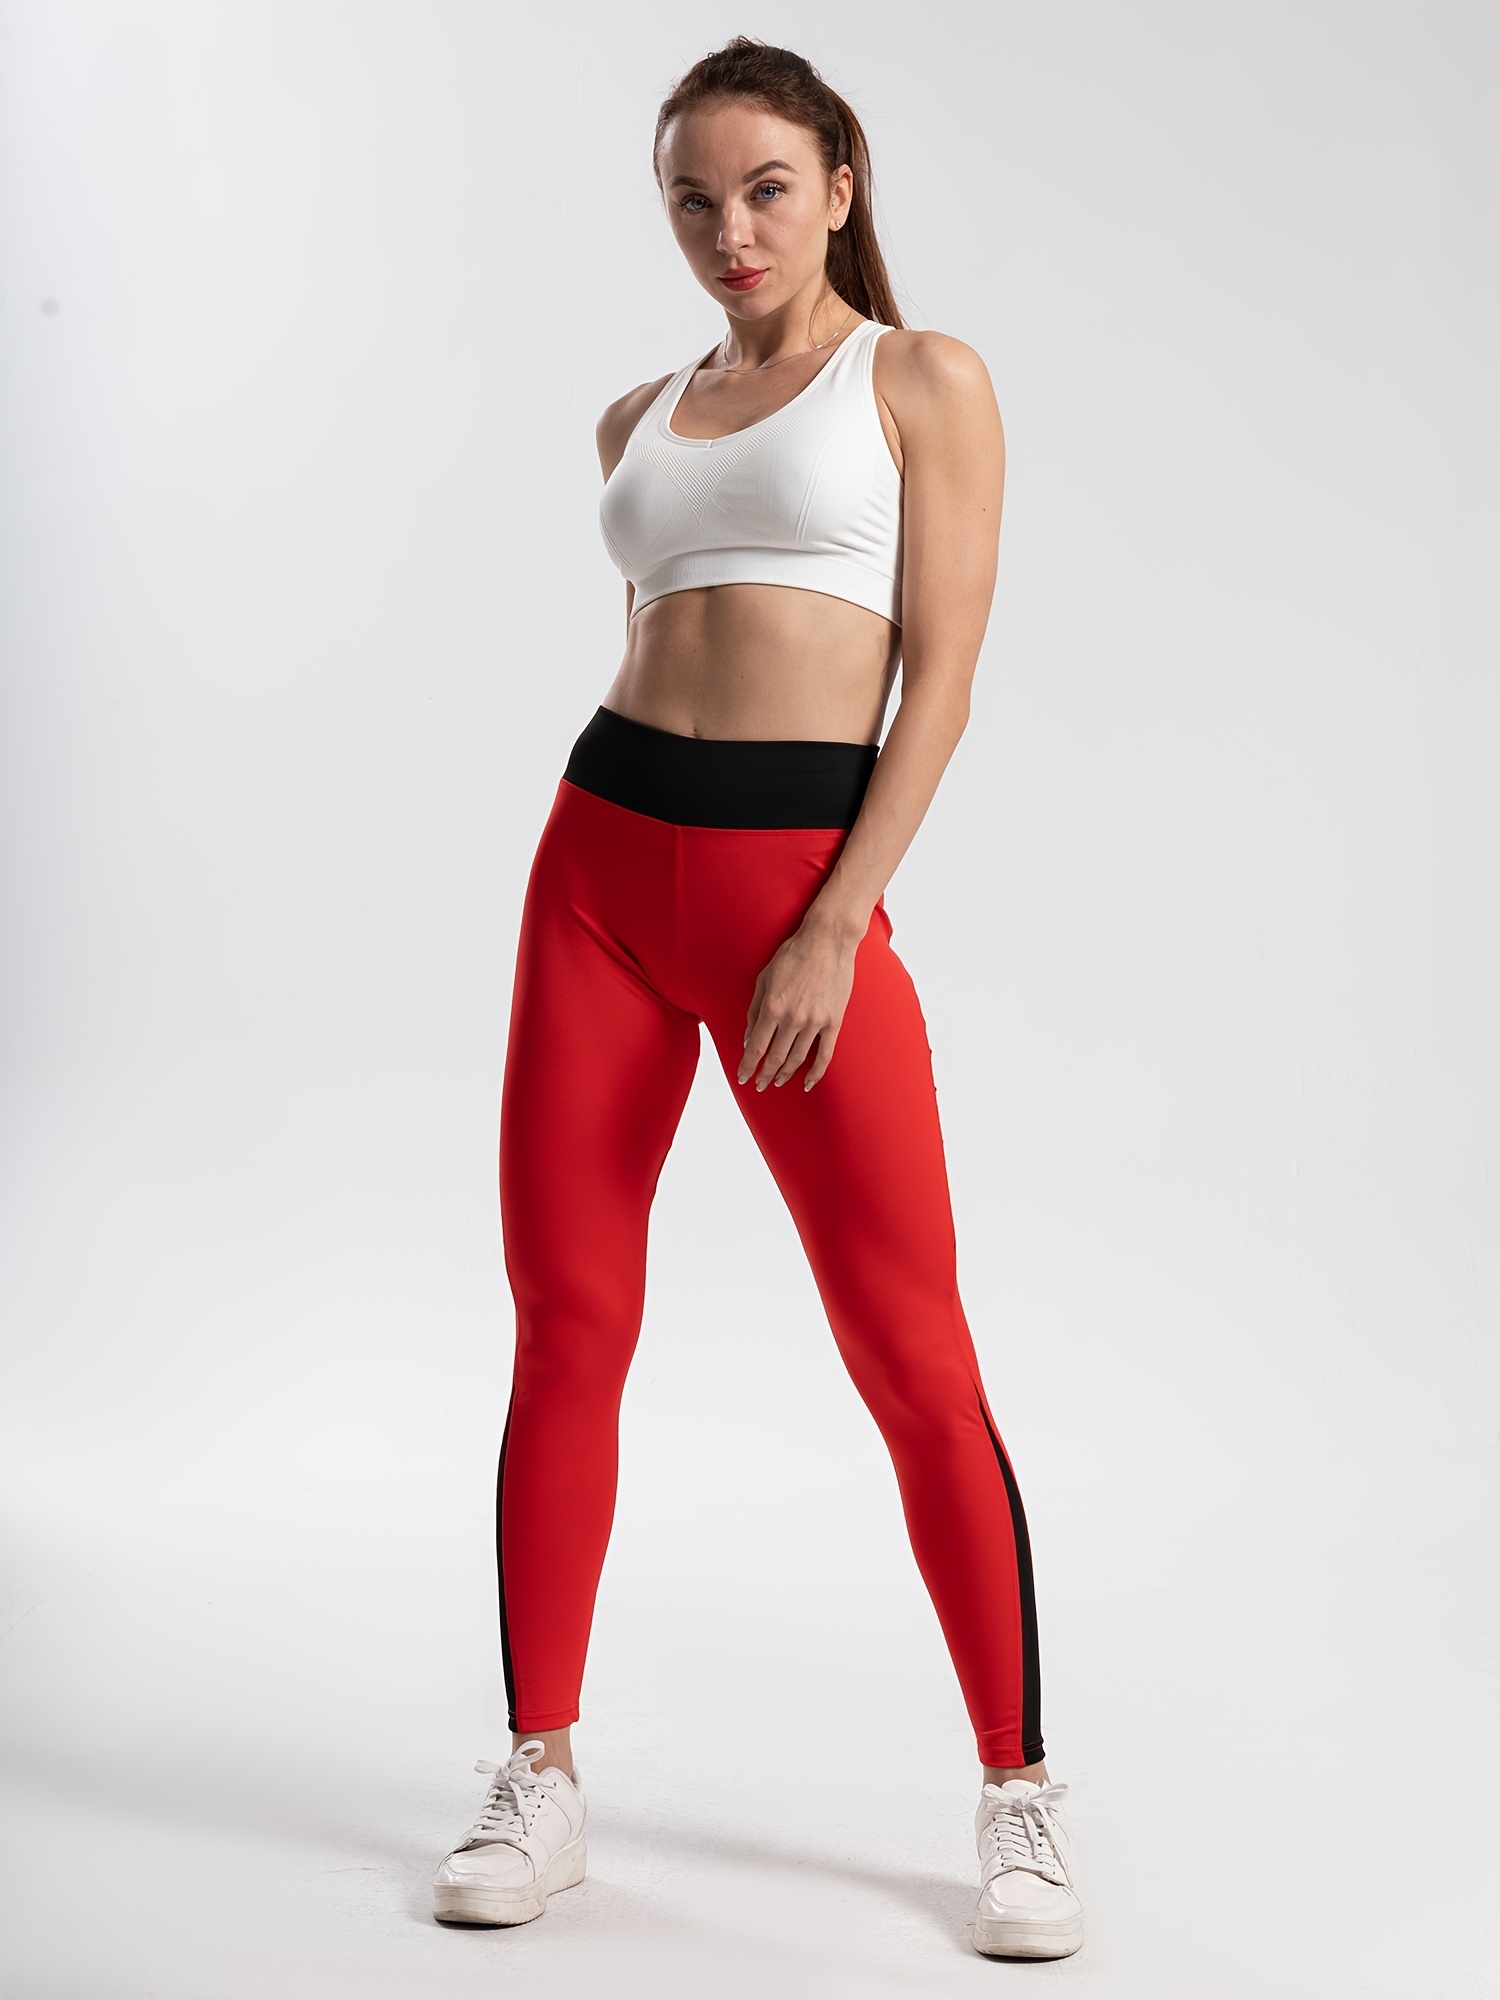 Women's High Waisted Sports Capri Leggings - Slim Fit, Elastic & Breathable  For Yoga & Running!